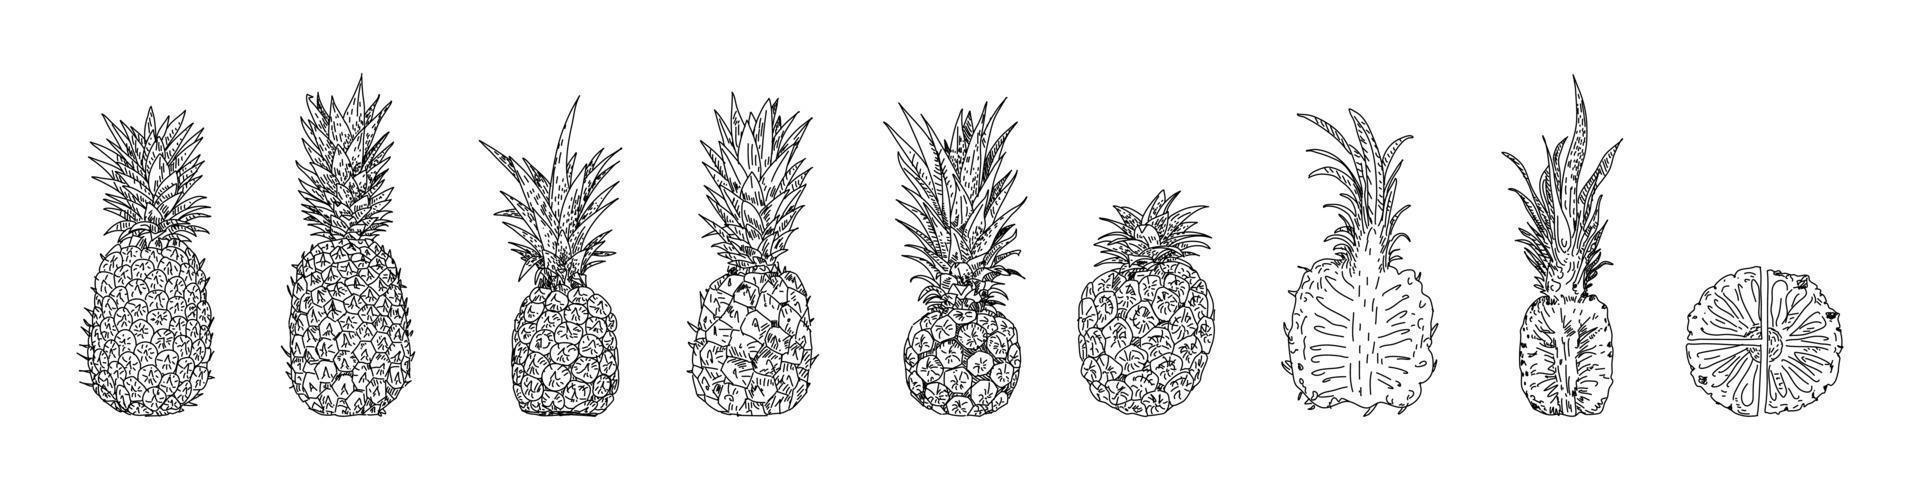 illustrazioni vettoriali disegnate a mano di ananas.